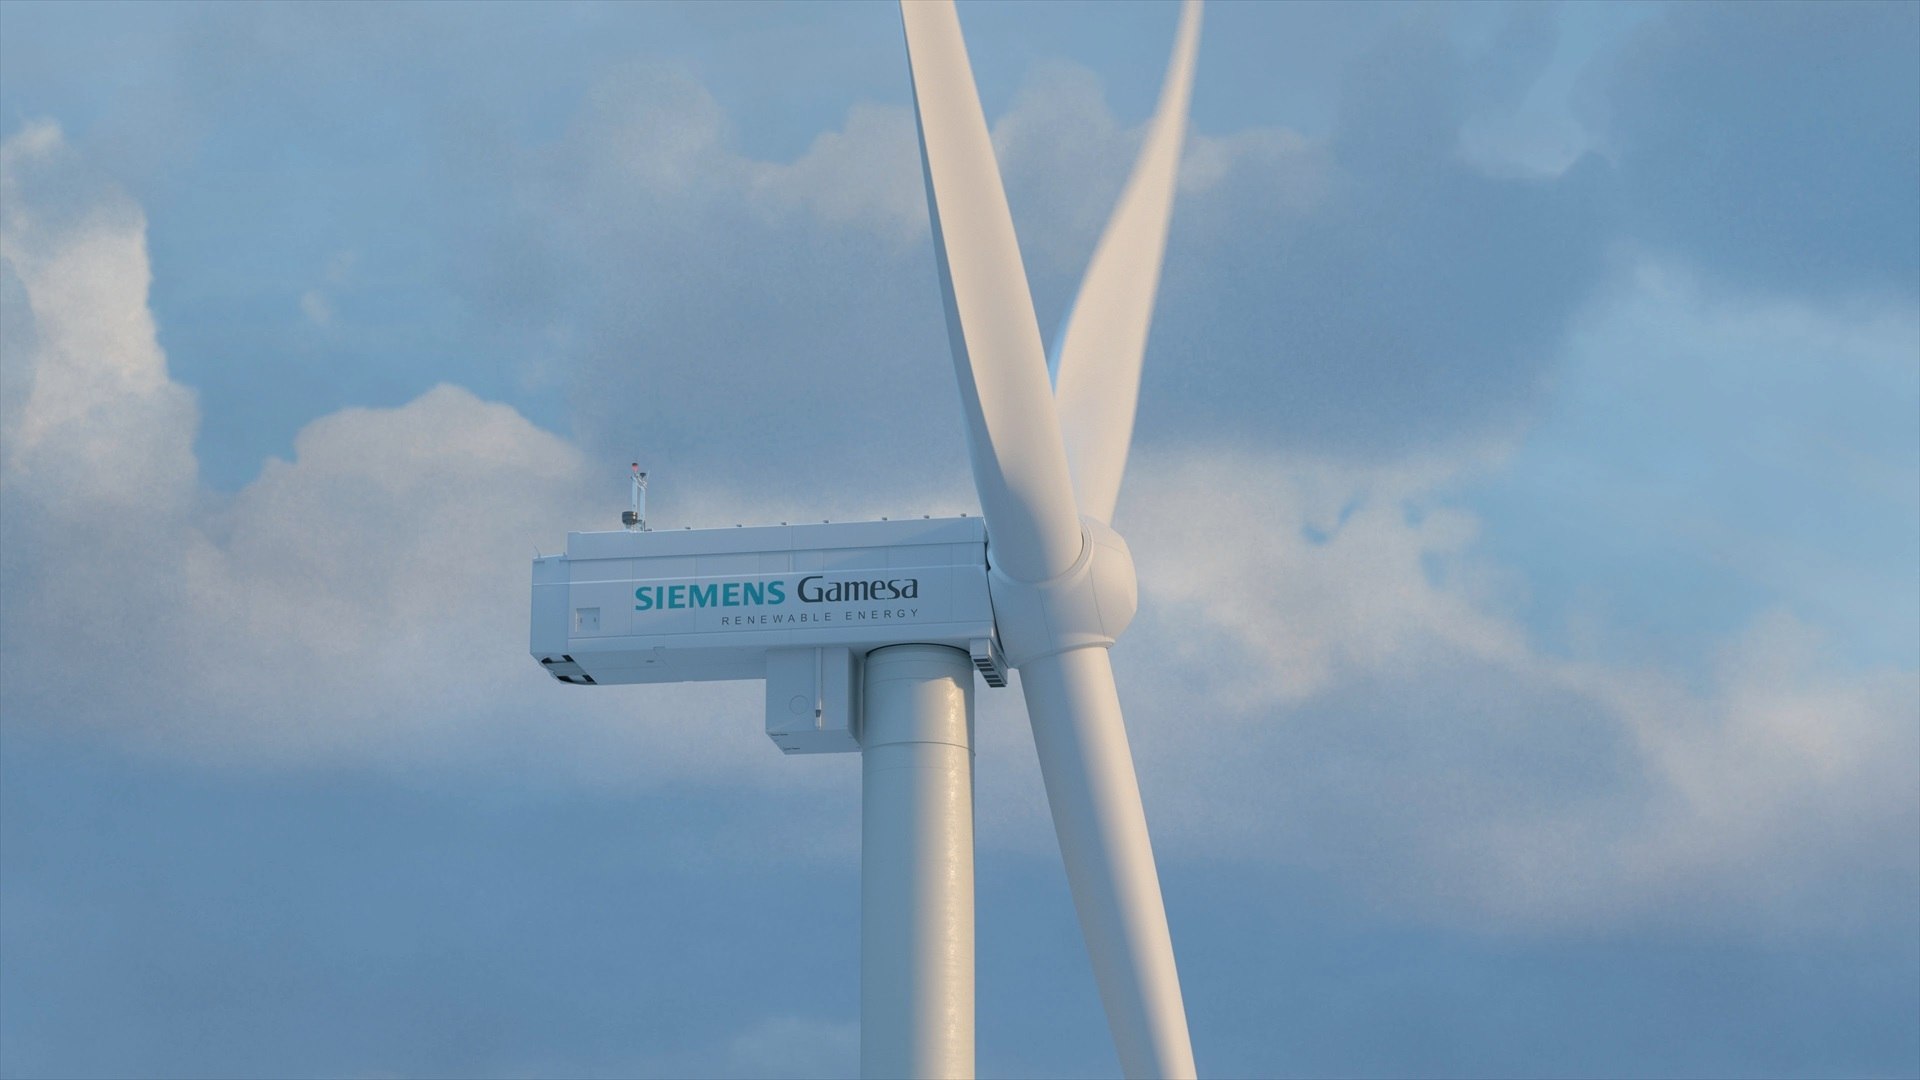 Siemens Gamesa: el fallo en las turbinas amenaza su existencia en España y 5.000 empleos